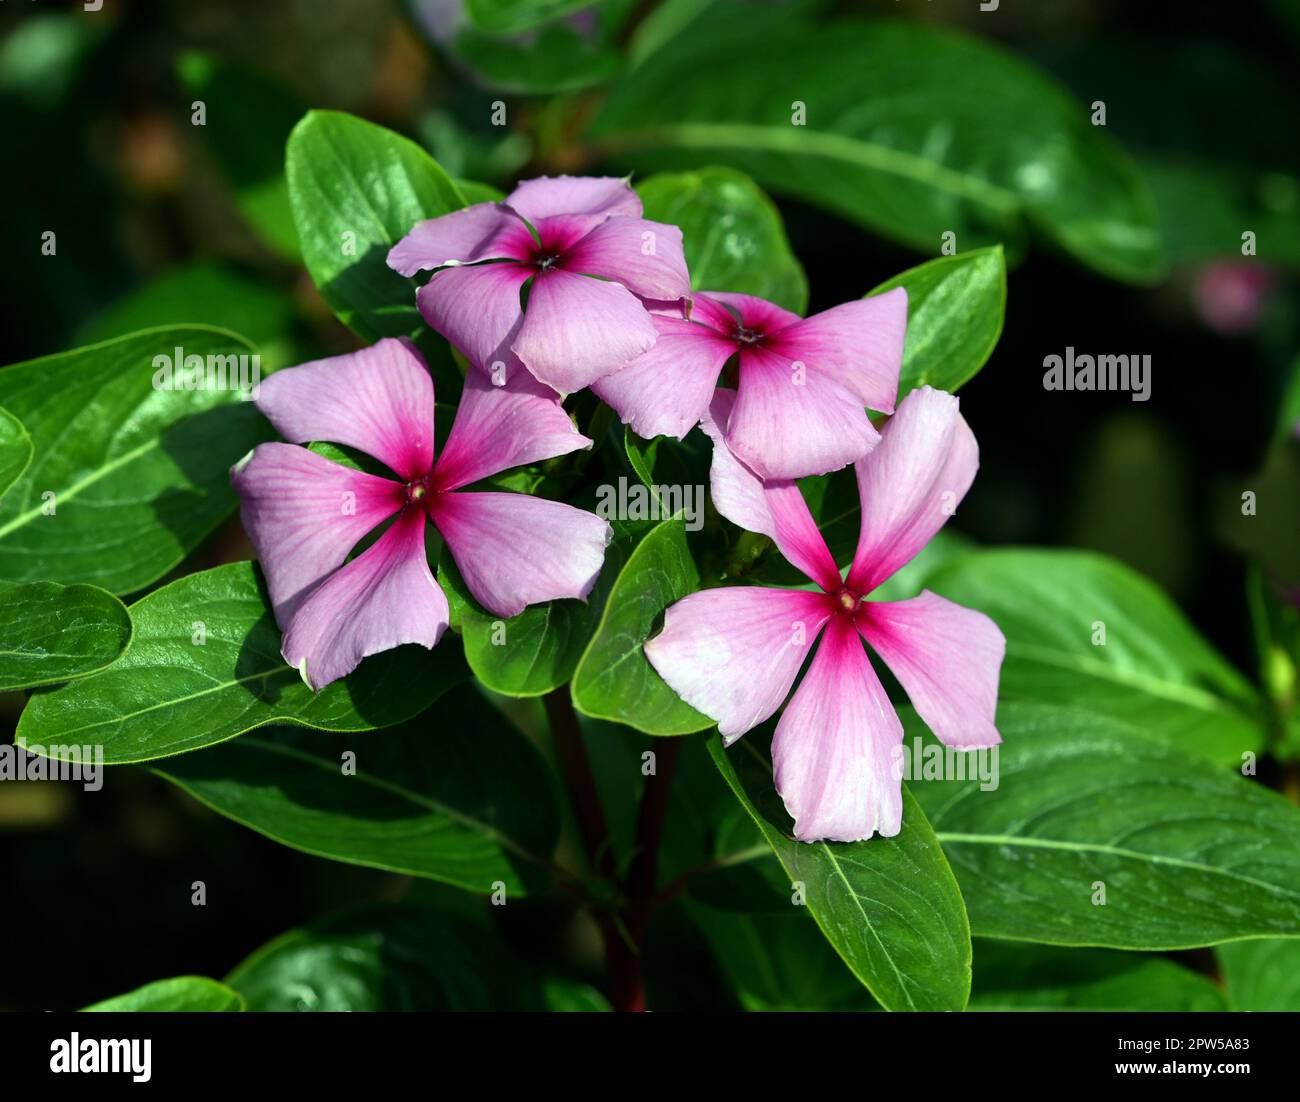 Madagaskar Immergruen, Cathranthus roseus, ist eine wichtige Heilpflanze mit rosa oder weissen Blueten und wird in der Medizin verwendet. Madagascar e Stock Photo